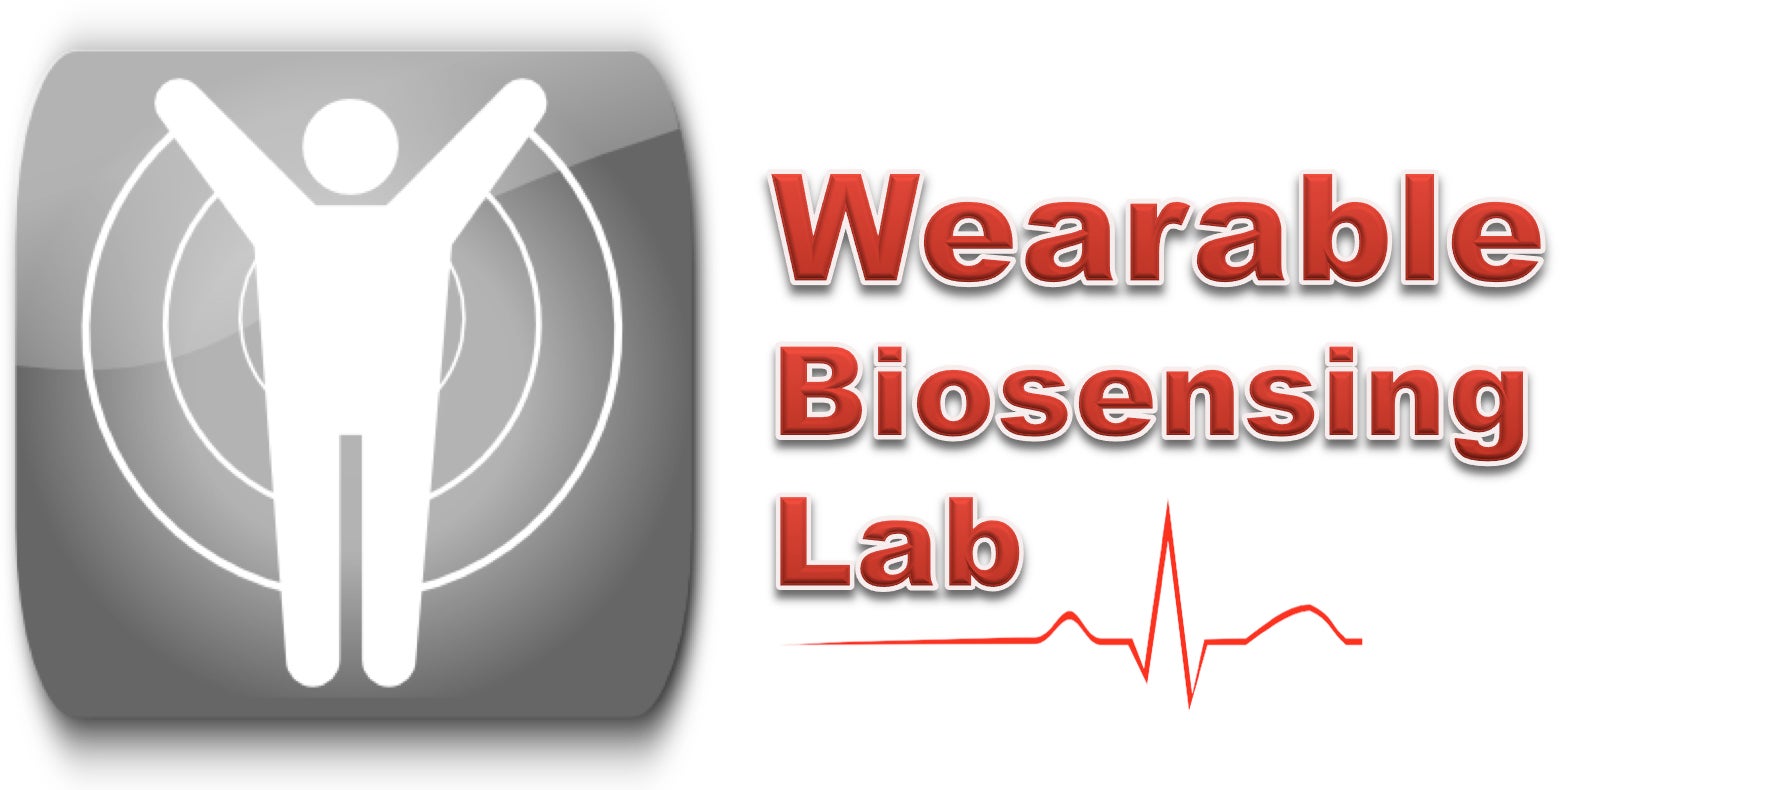 Wearable Biosensing Lab logo